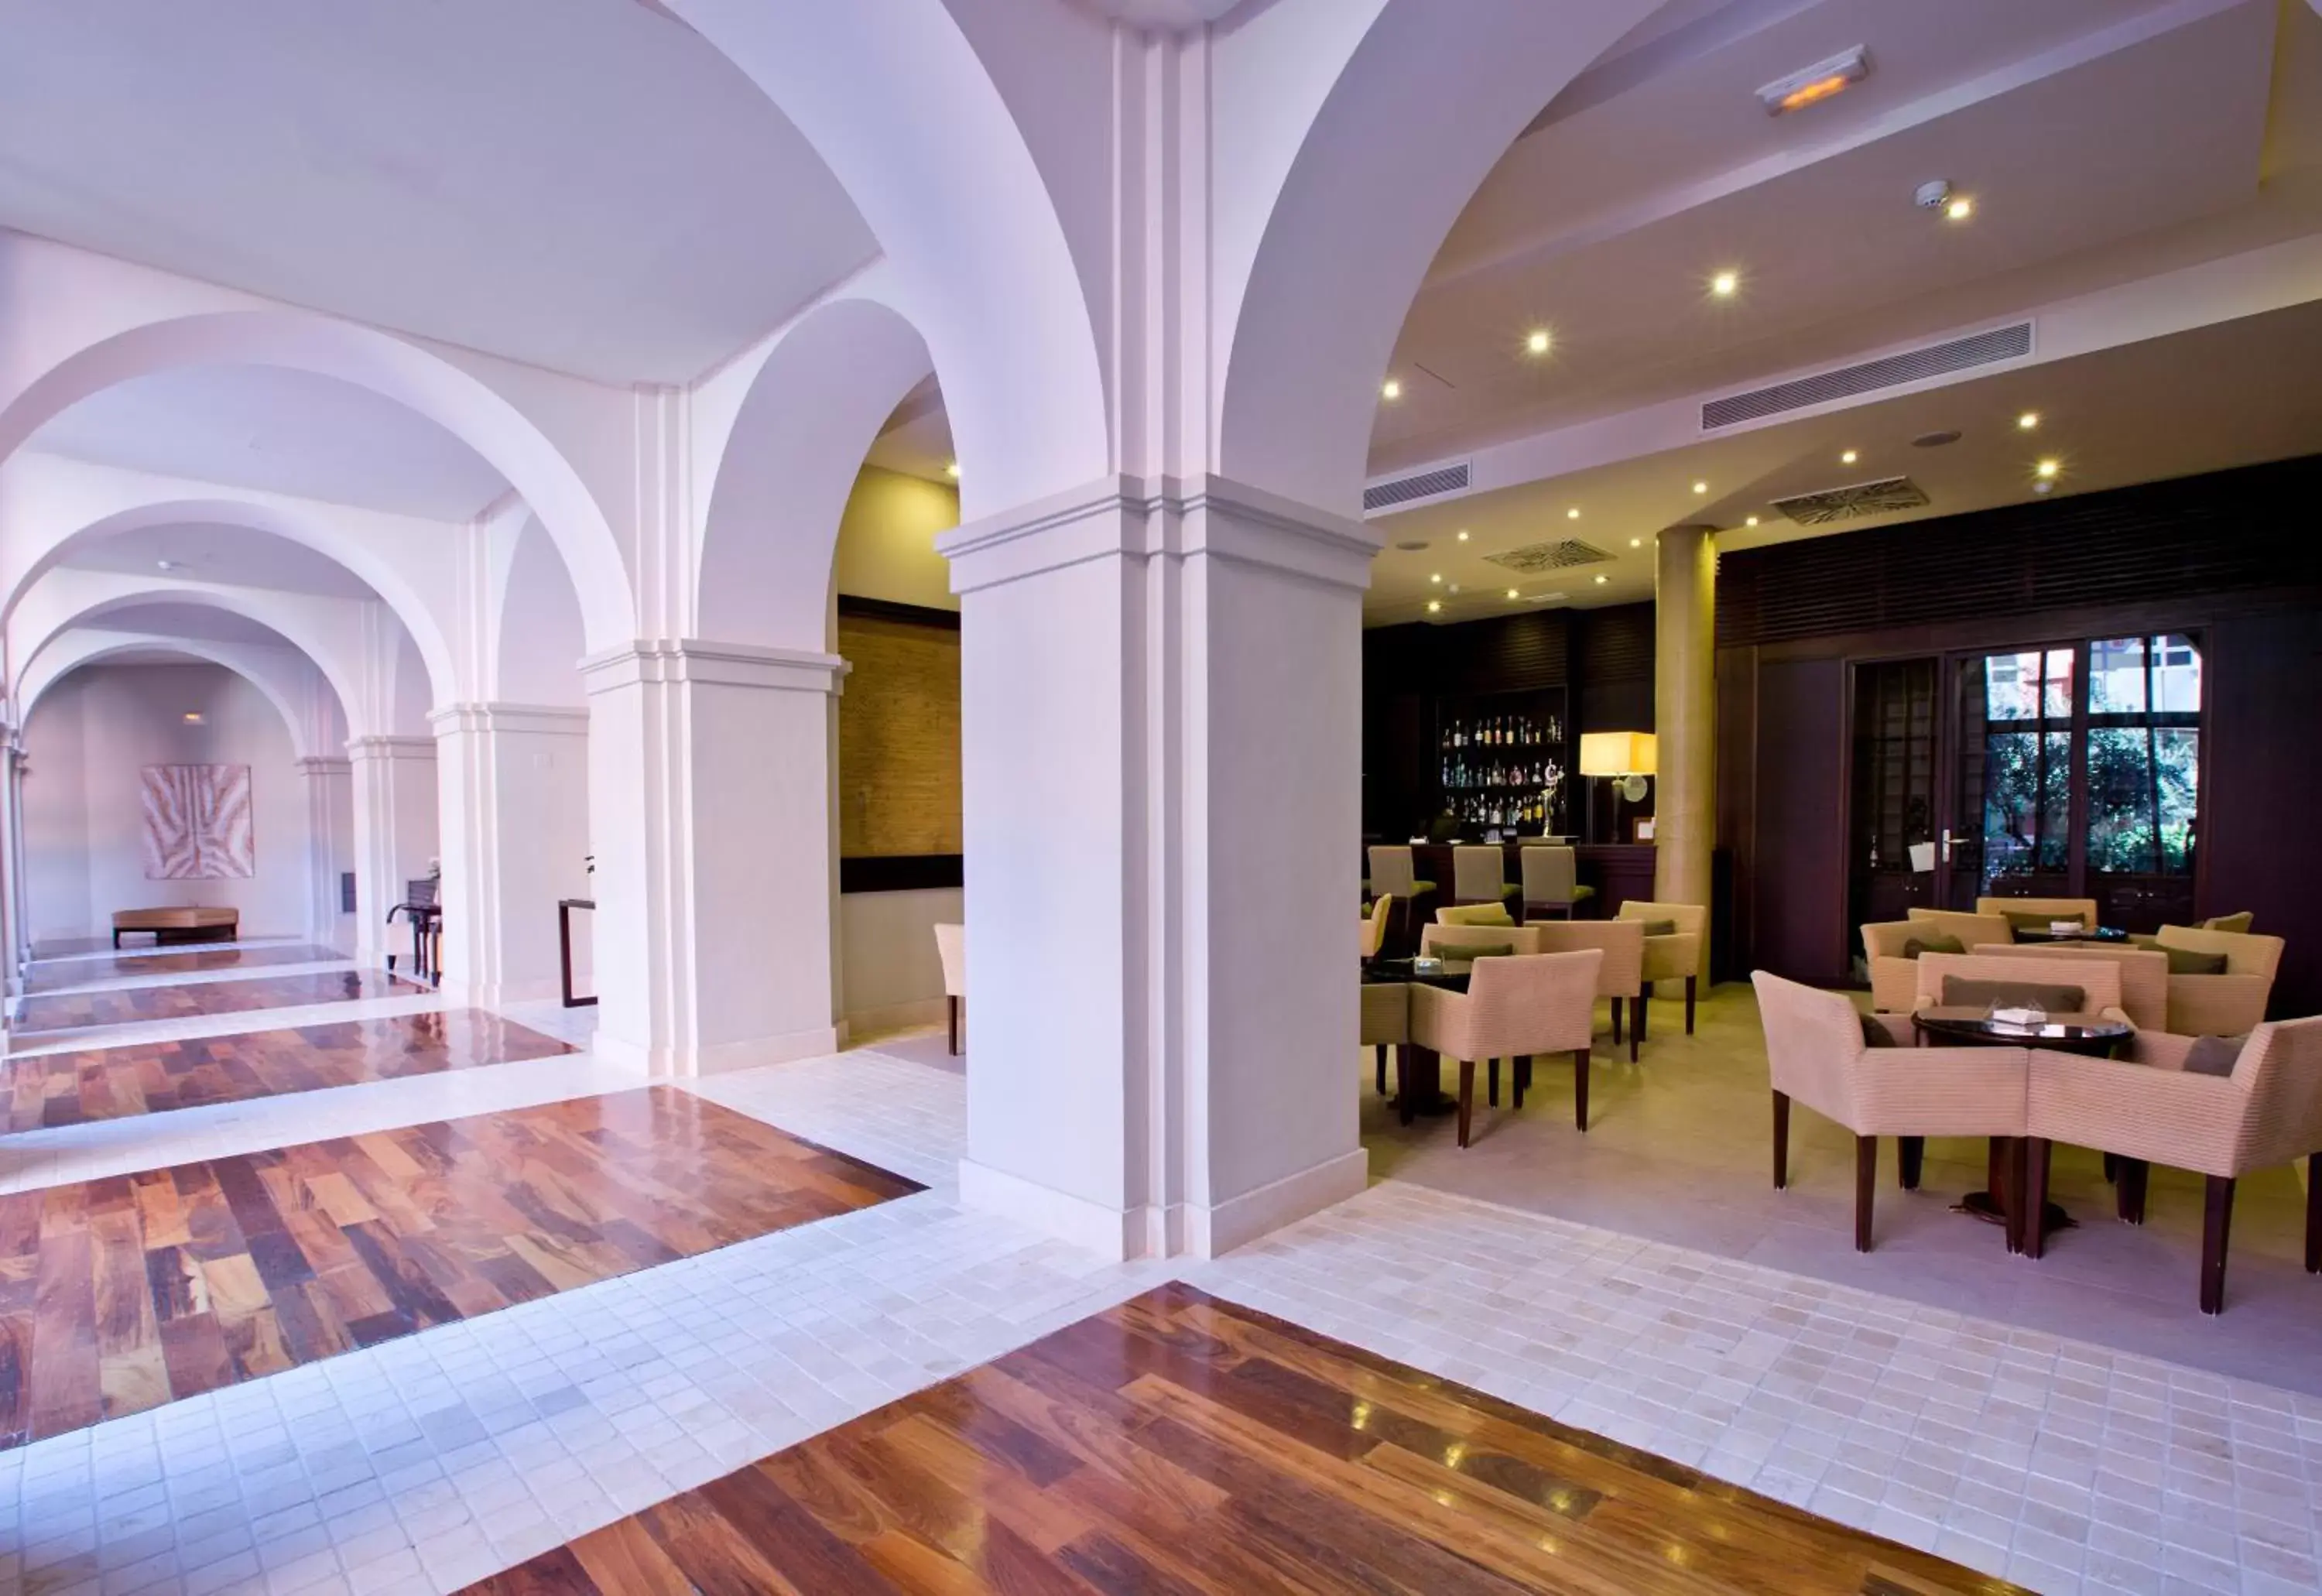 Lobby or reception, Restaurant/Places to Eat in Intur Alcazar de San Juan